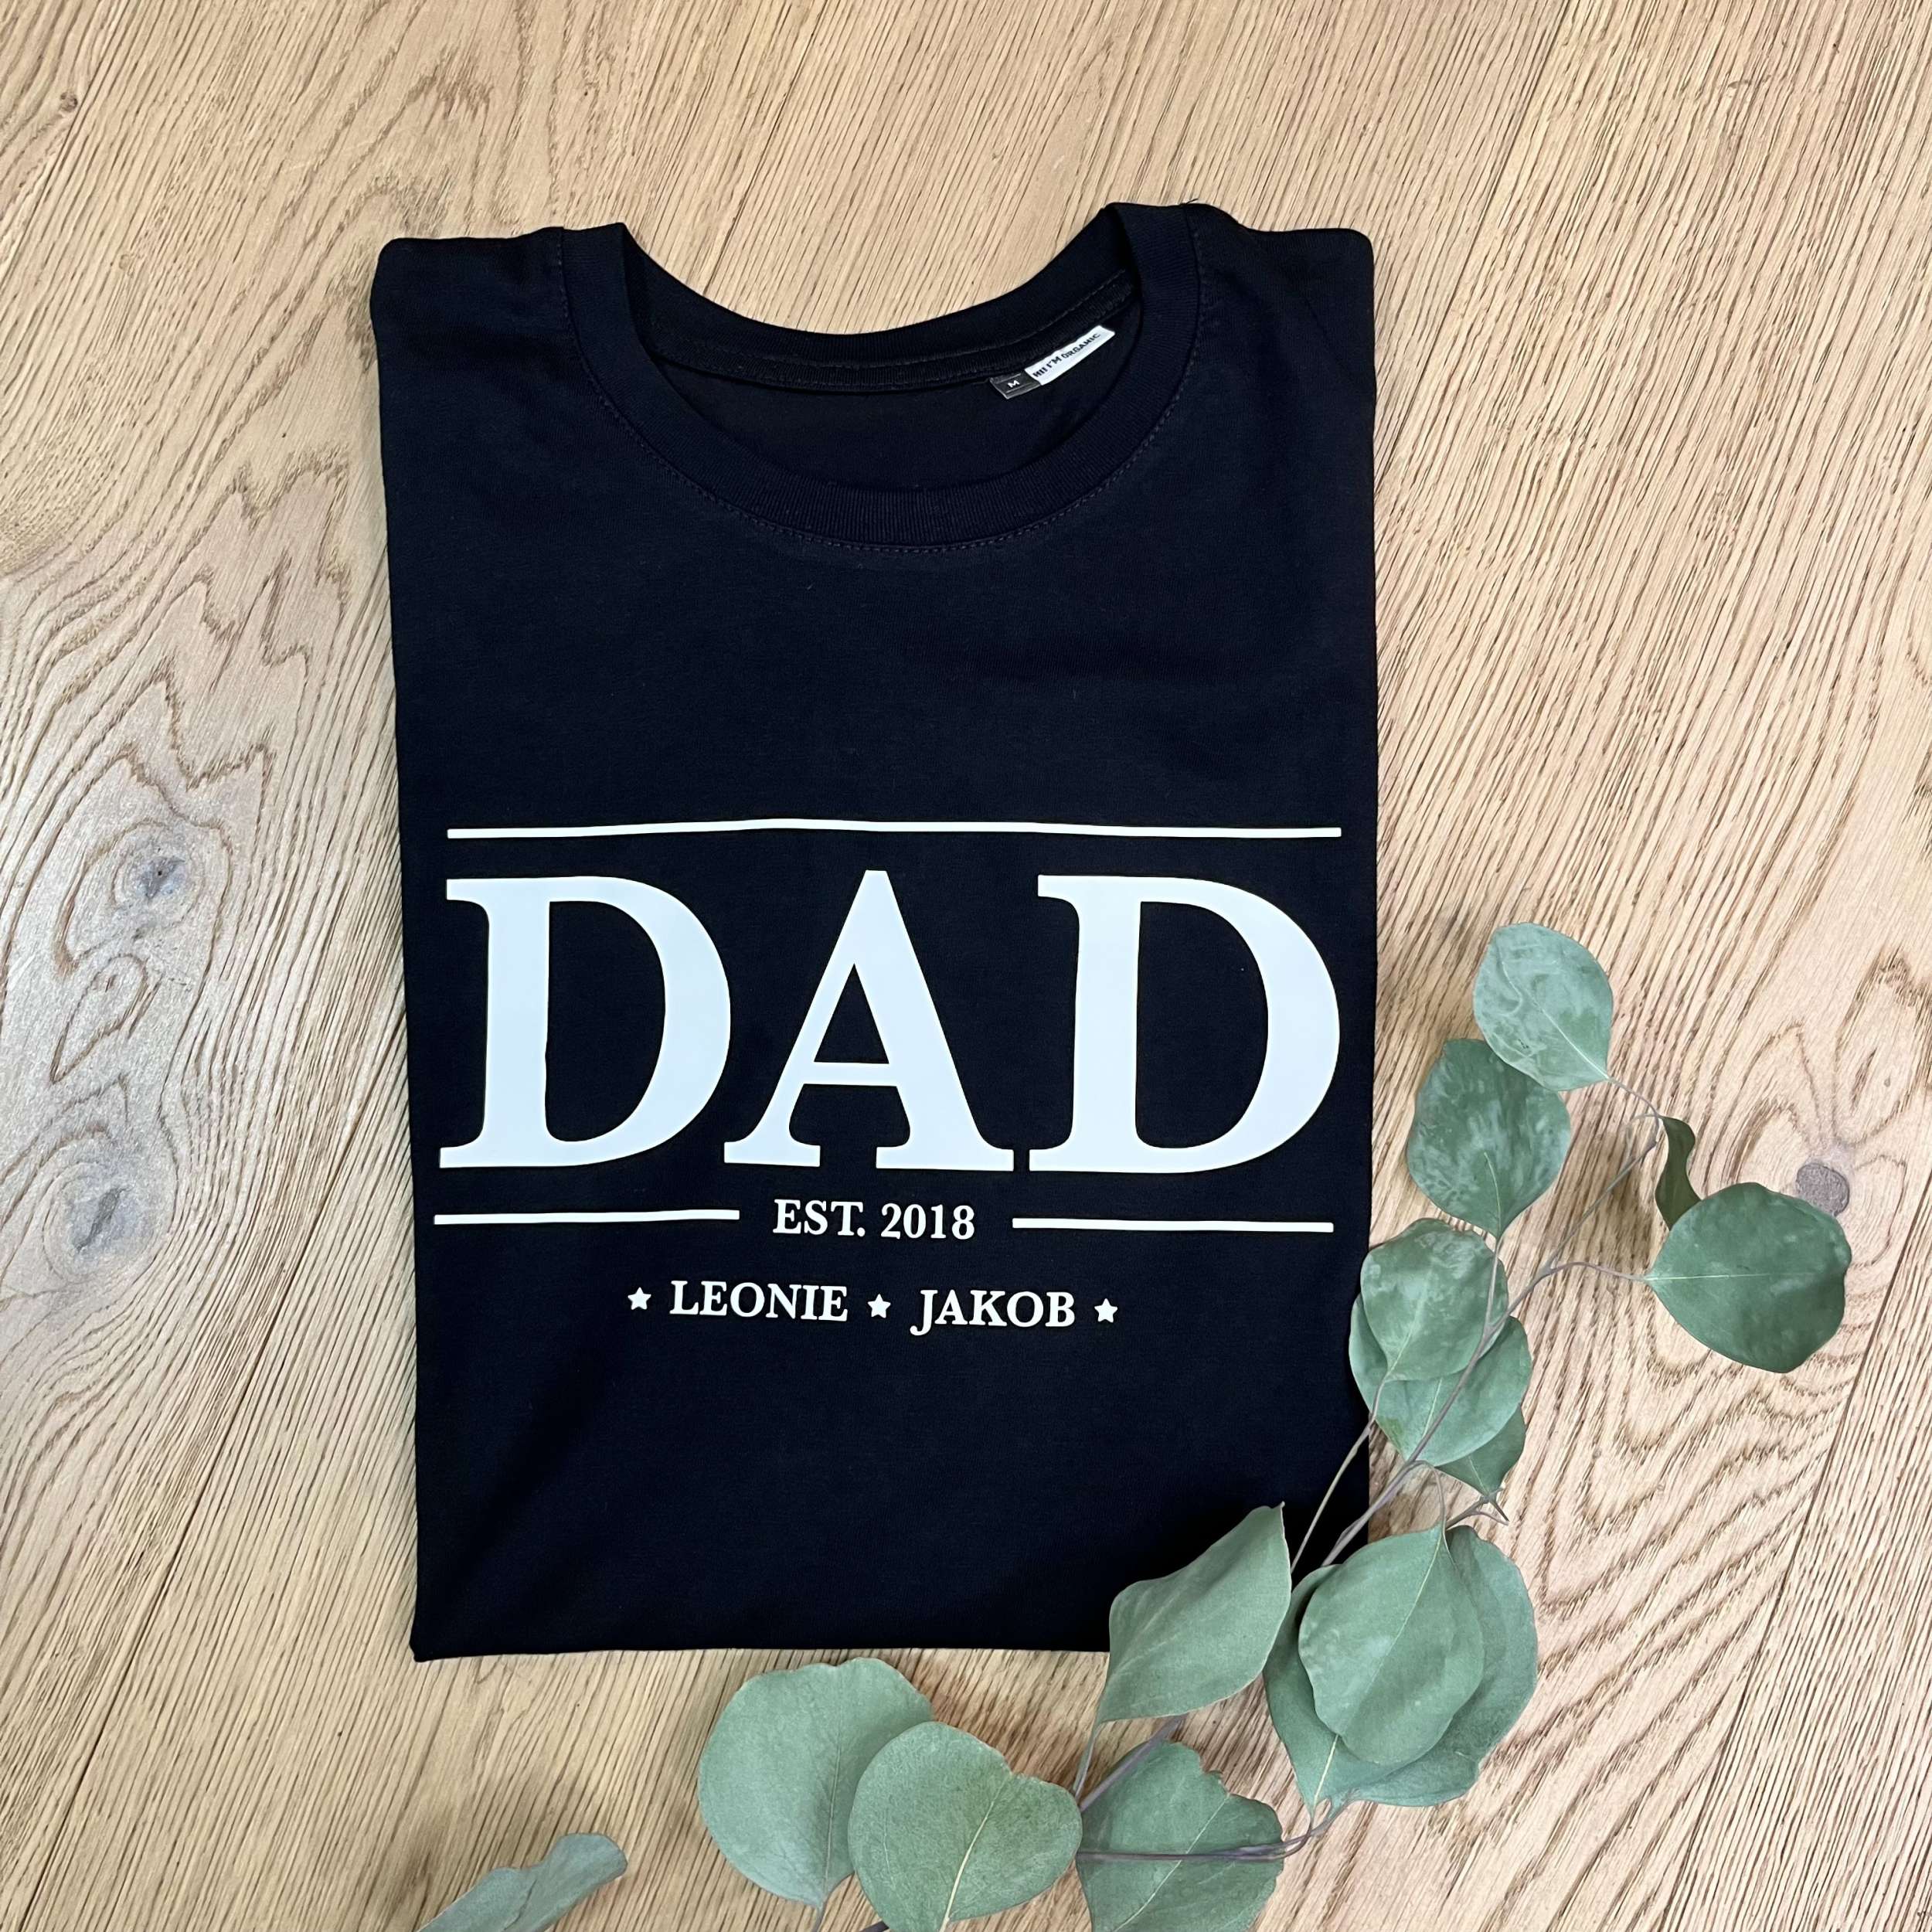 Unser T-Shirt "Dad" personalisiert mit den Namen der Kinder ist das perfekte Geschenk für den lieben Papa!